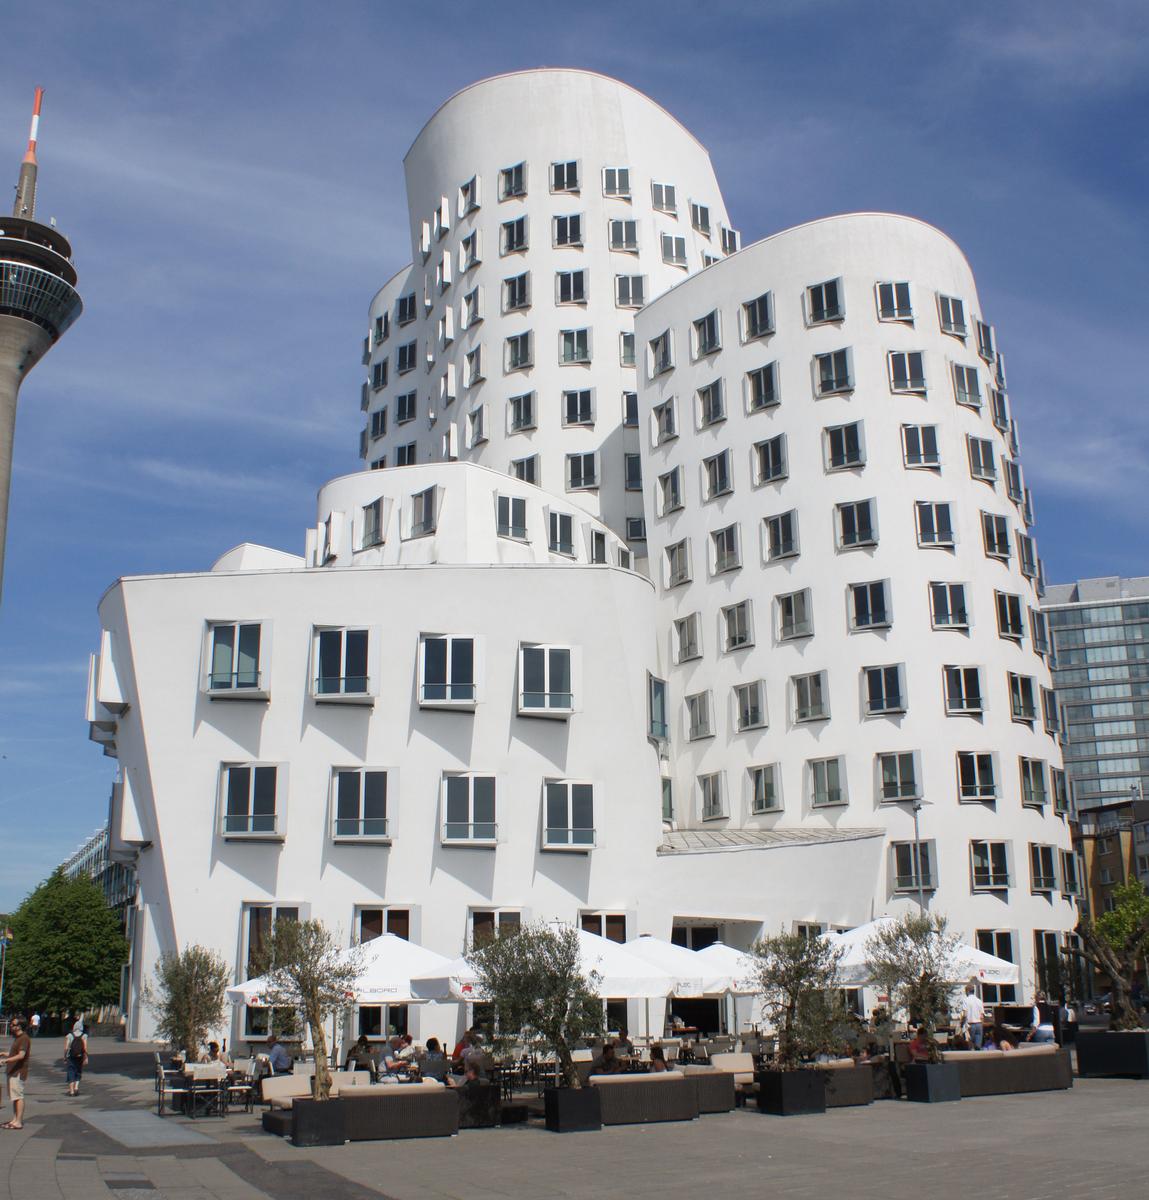 Neuer Zollhof – Medienhafen Düsseldorf – Der neue Zollhof - Gebäude C 